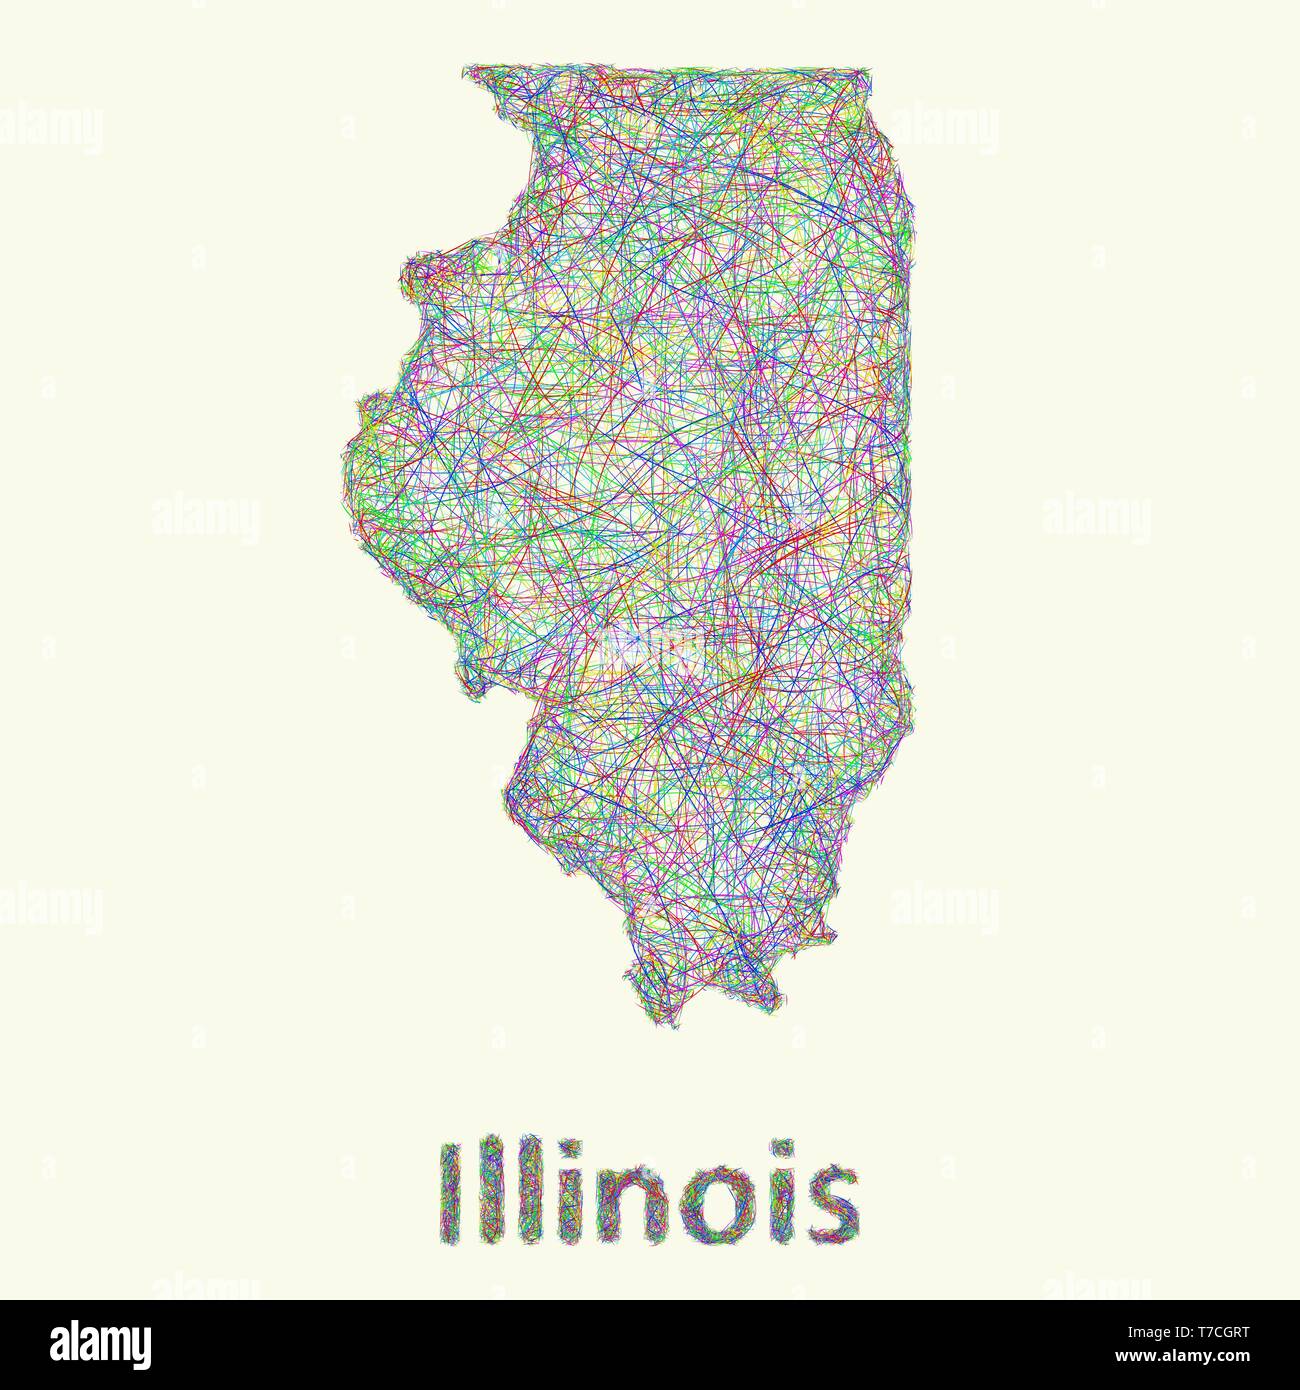 Illinois line art map Stock Vector